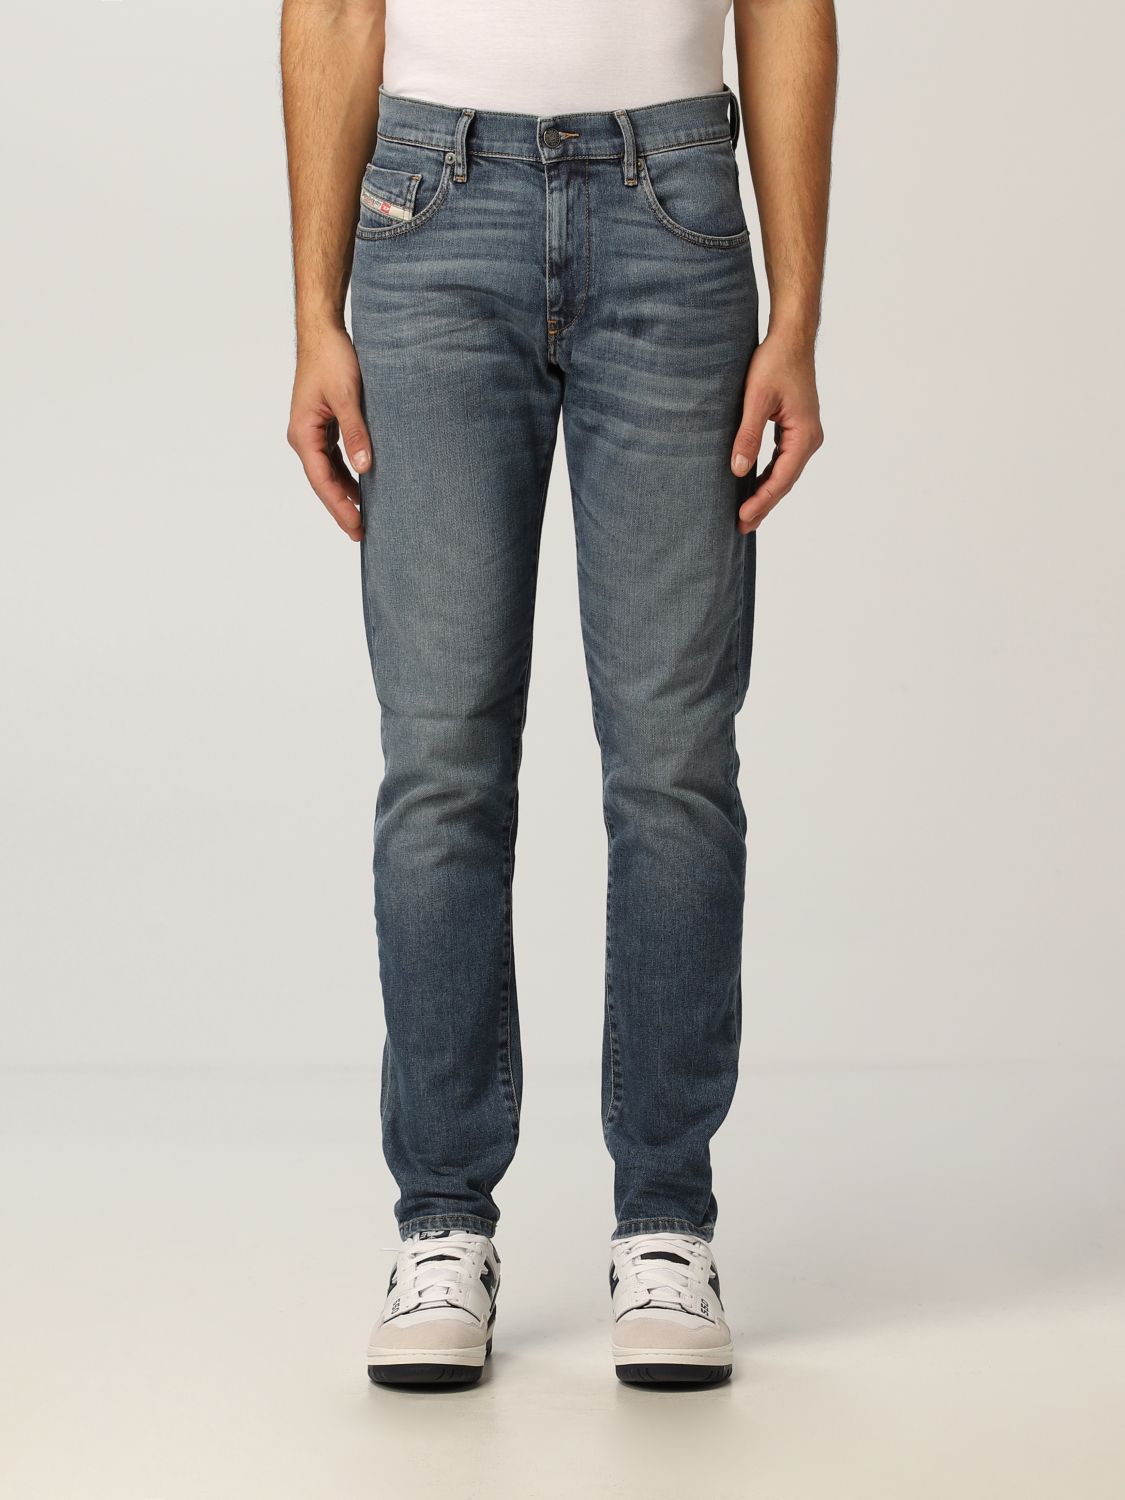 DIESEL: D-strukt slim fit jeans - Denim | Diesel jeans 00SPW5 009EI ...